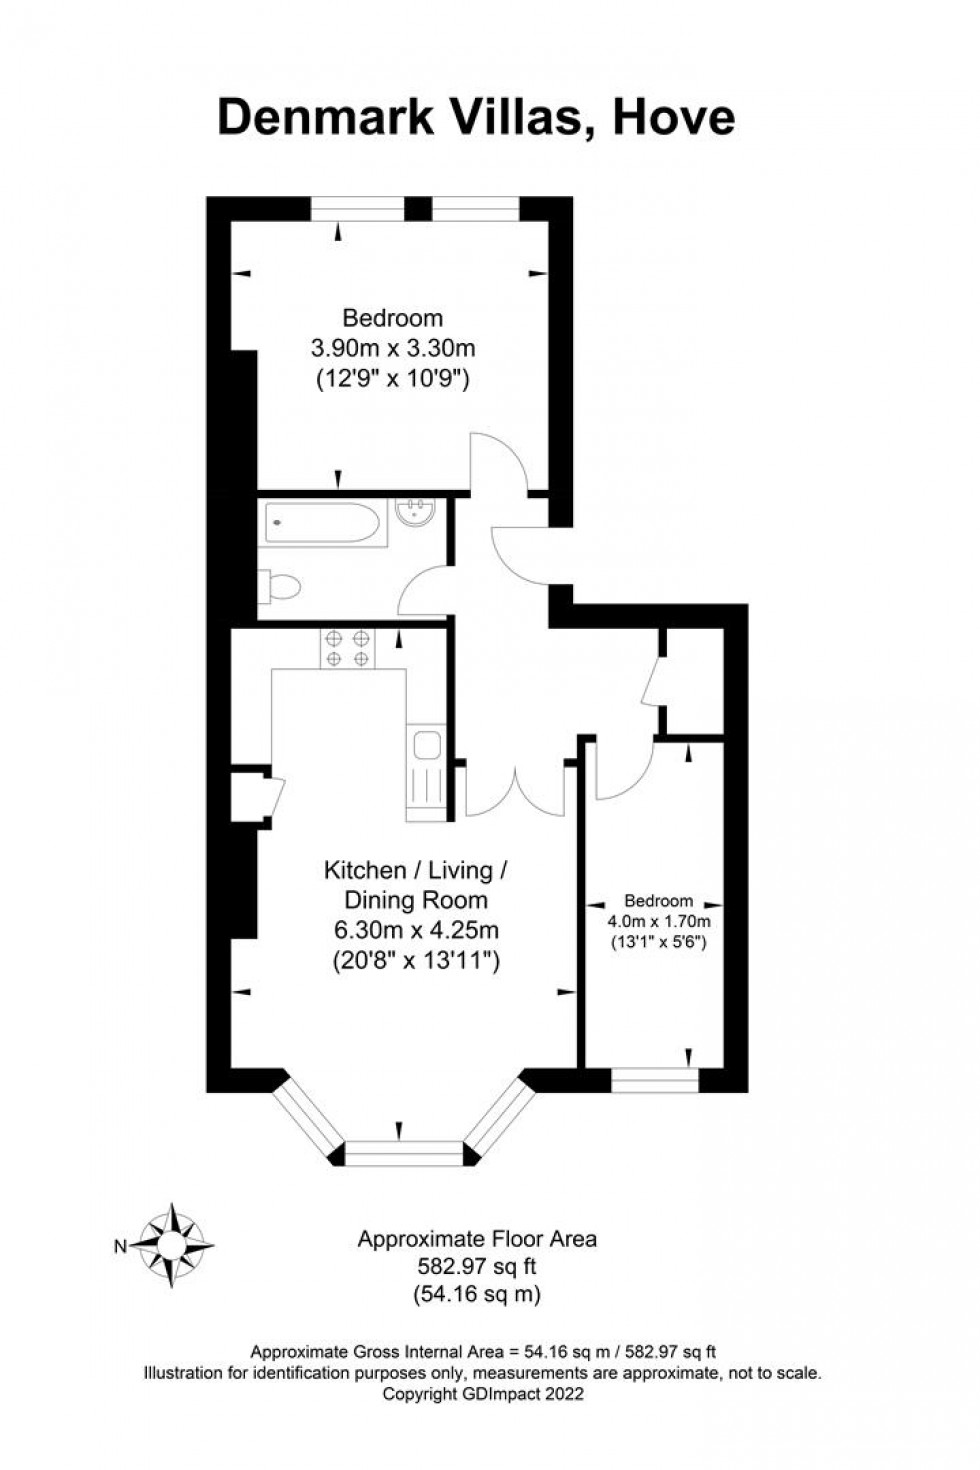 Floorplan for Denmark Villas, Hove